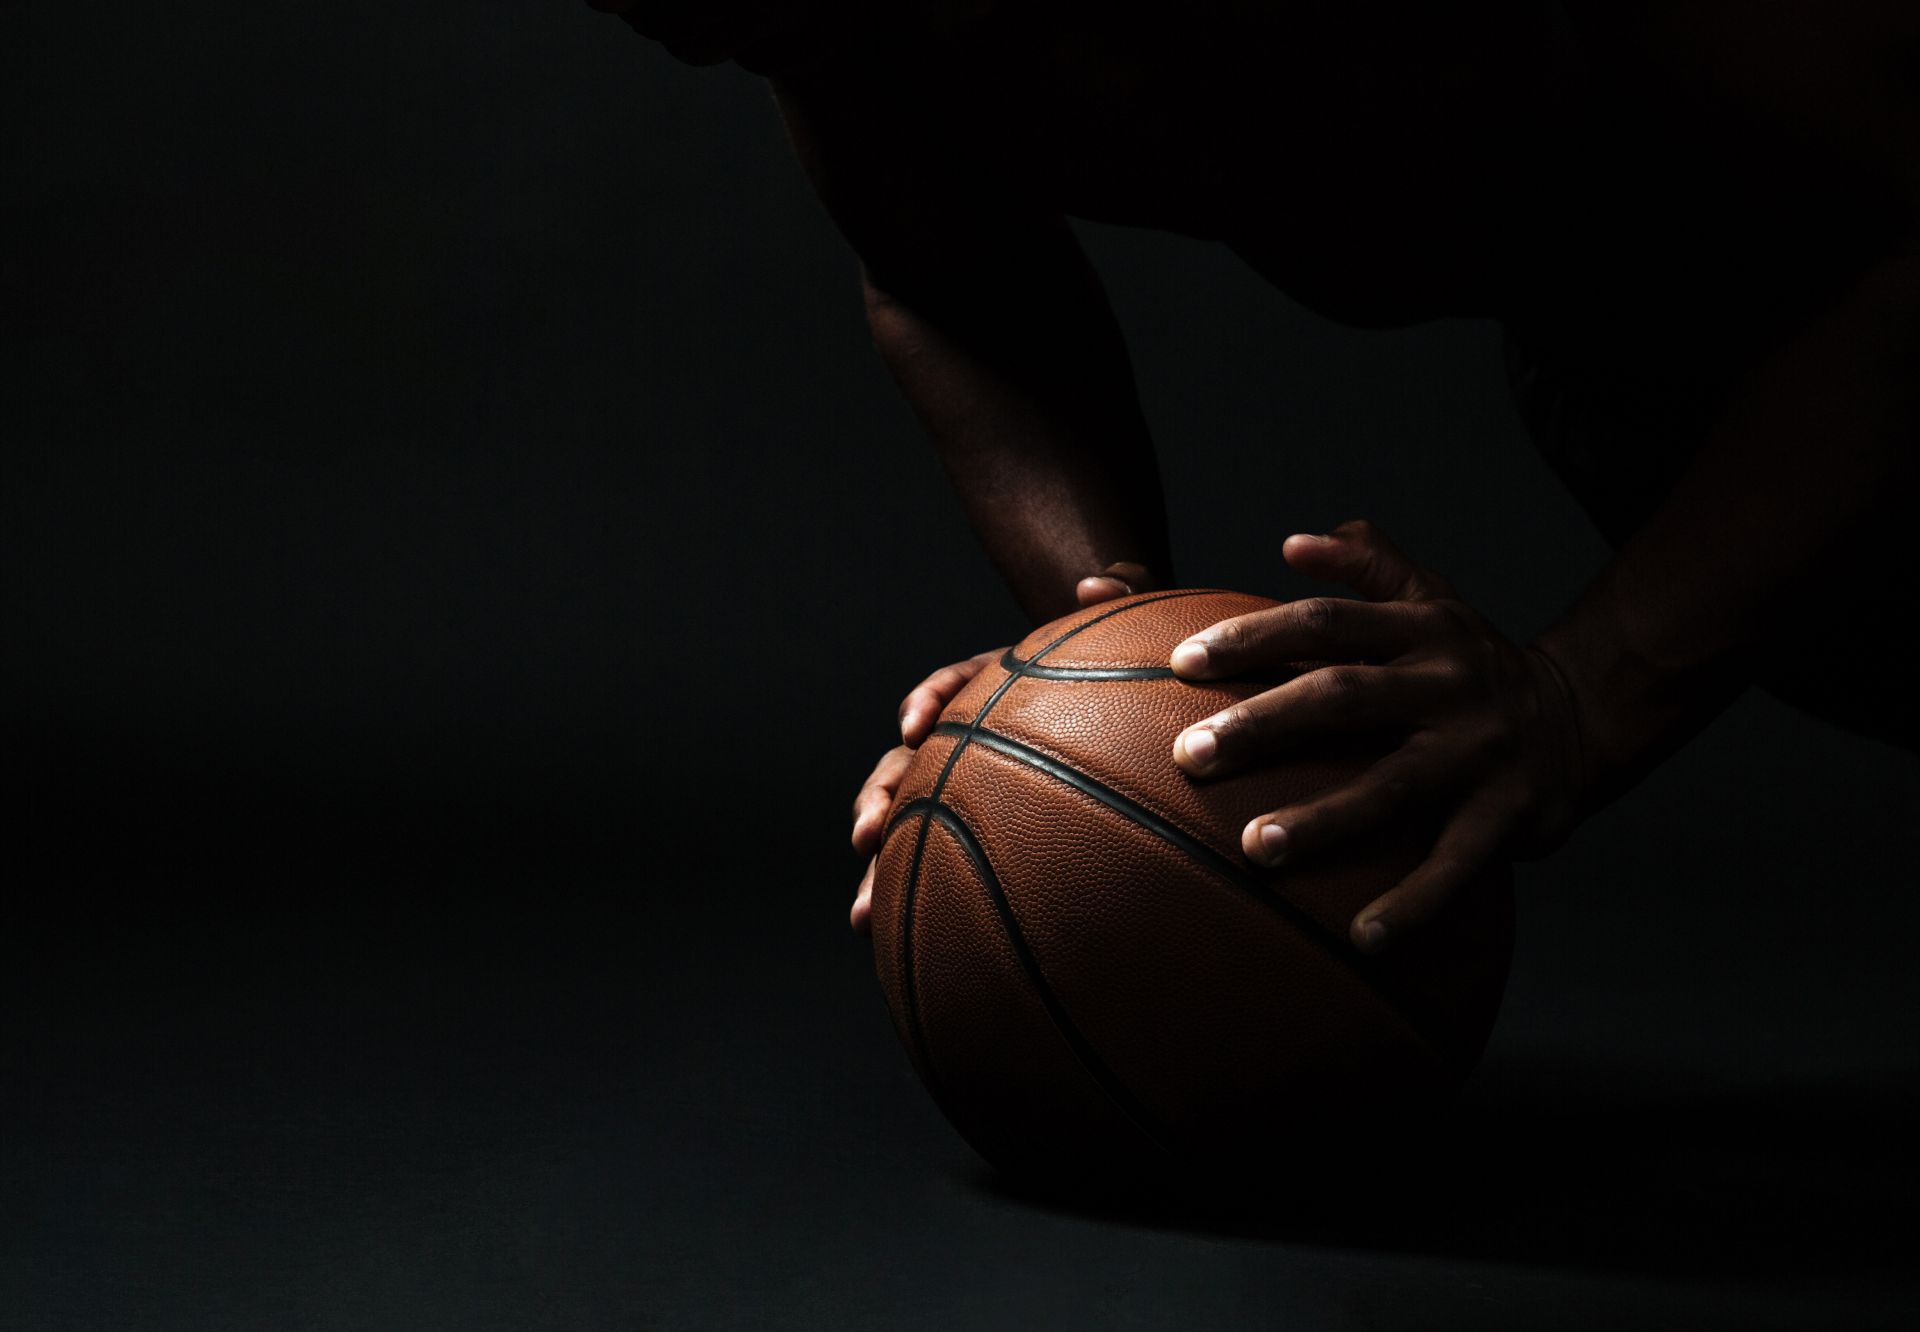 kosz do koszykówki w dłoniach zawodnika, który jest zaciemniony 